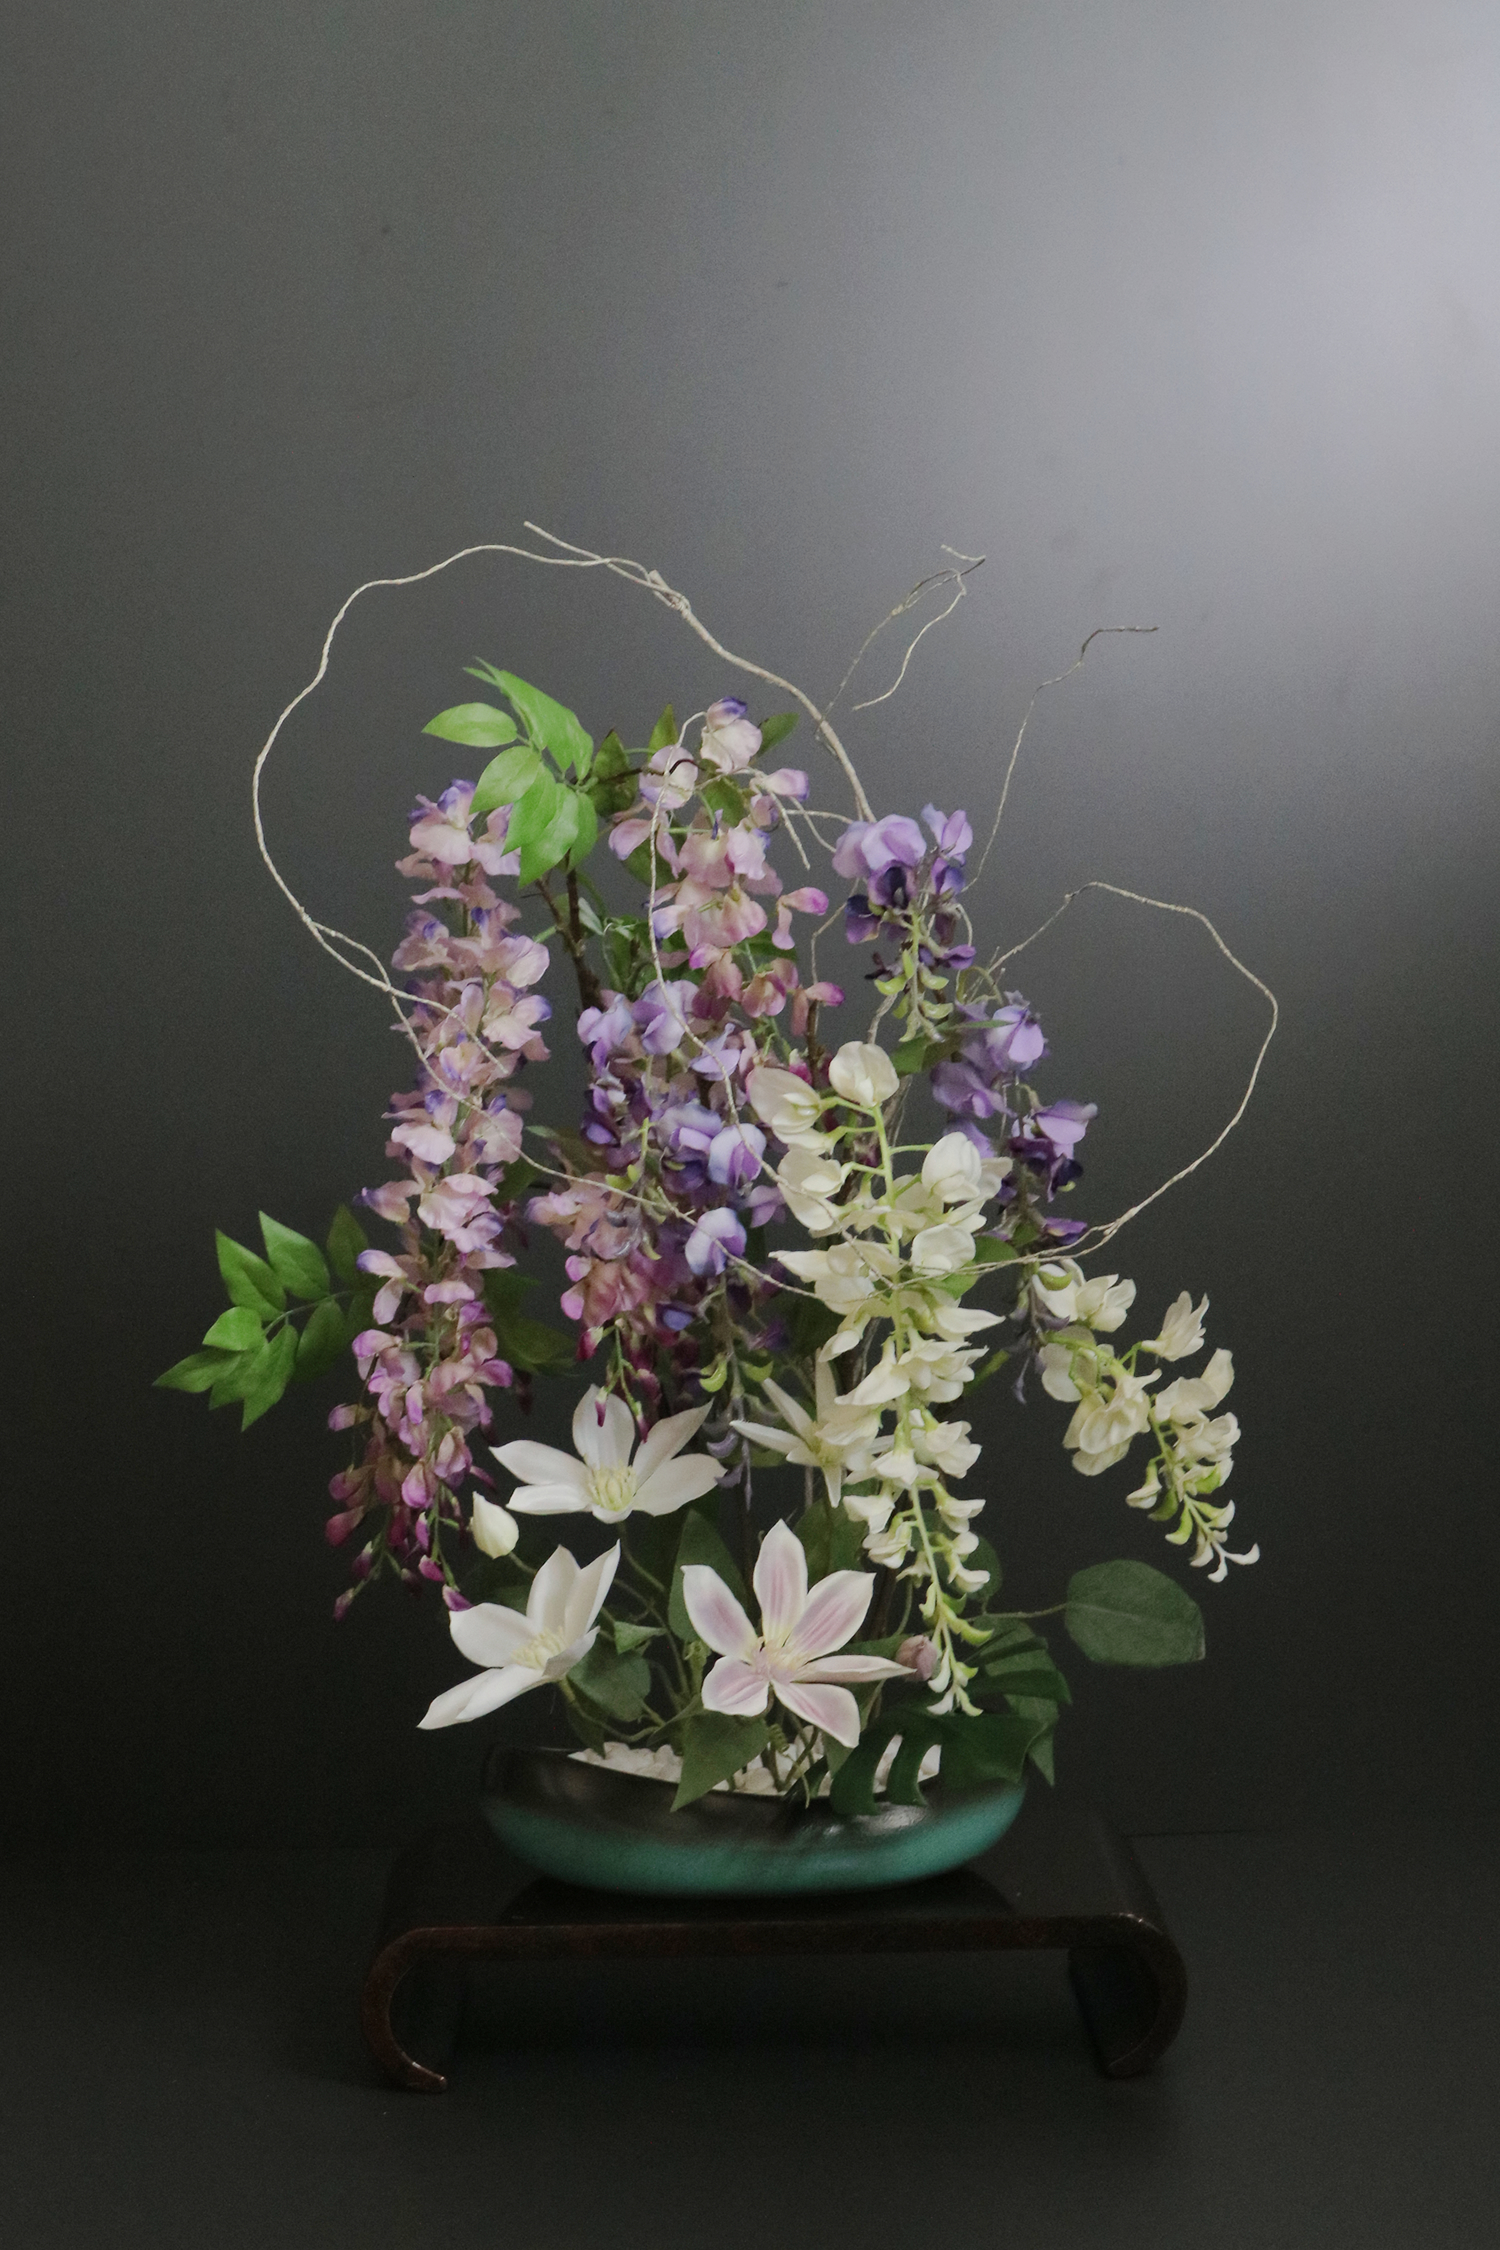 藤の花×クレマチス 和風スタイル 造花 アートフラワー Akanbi